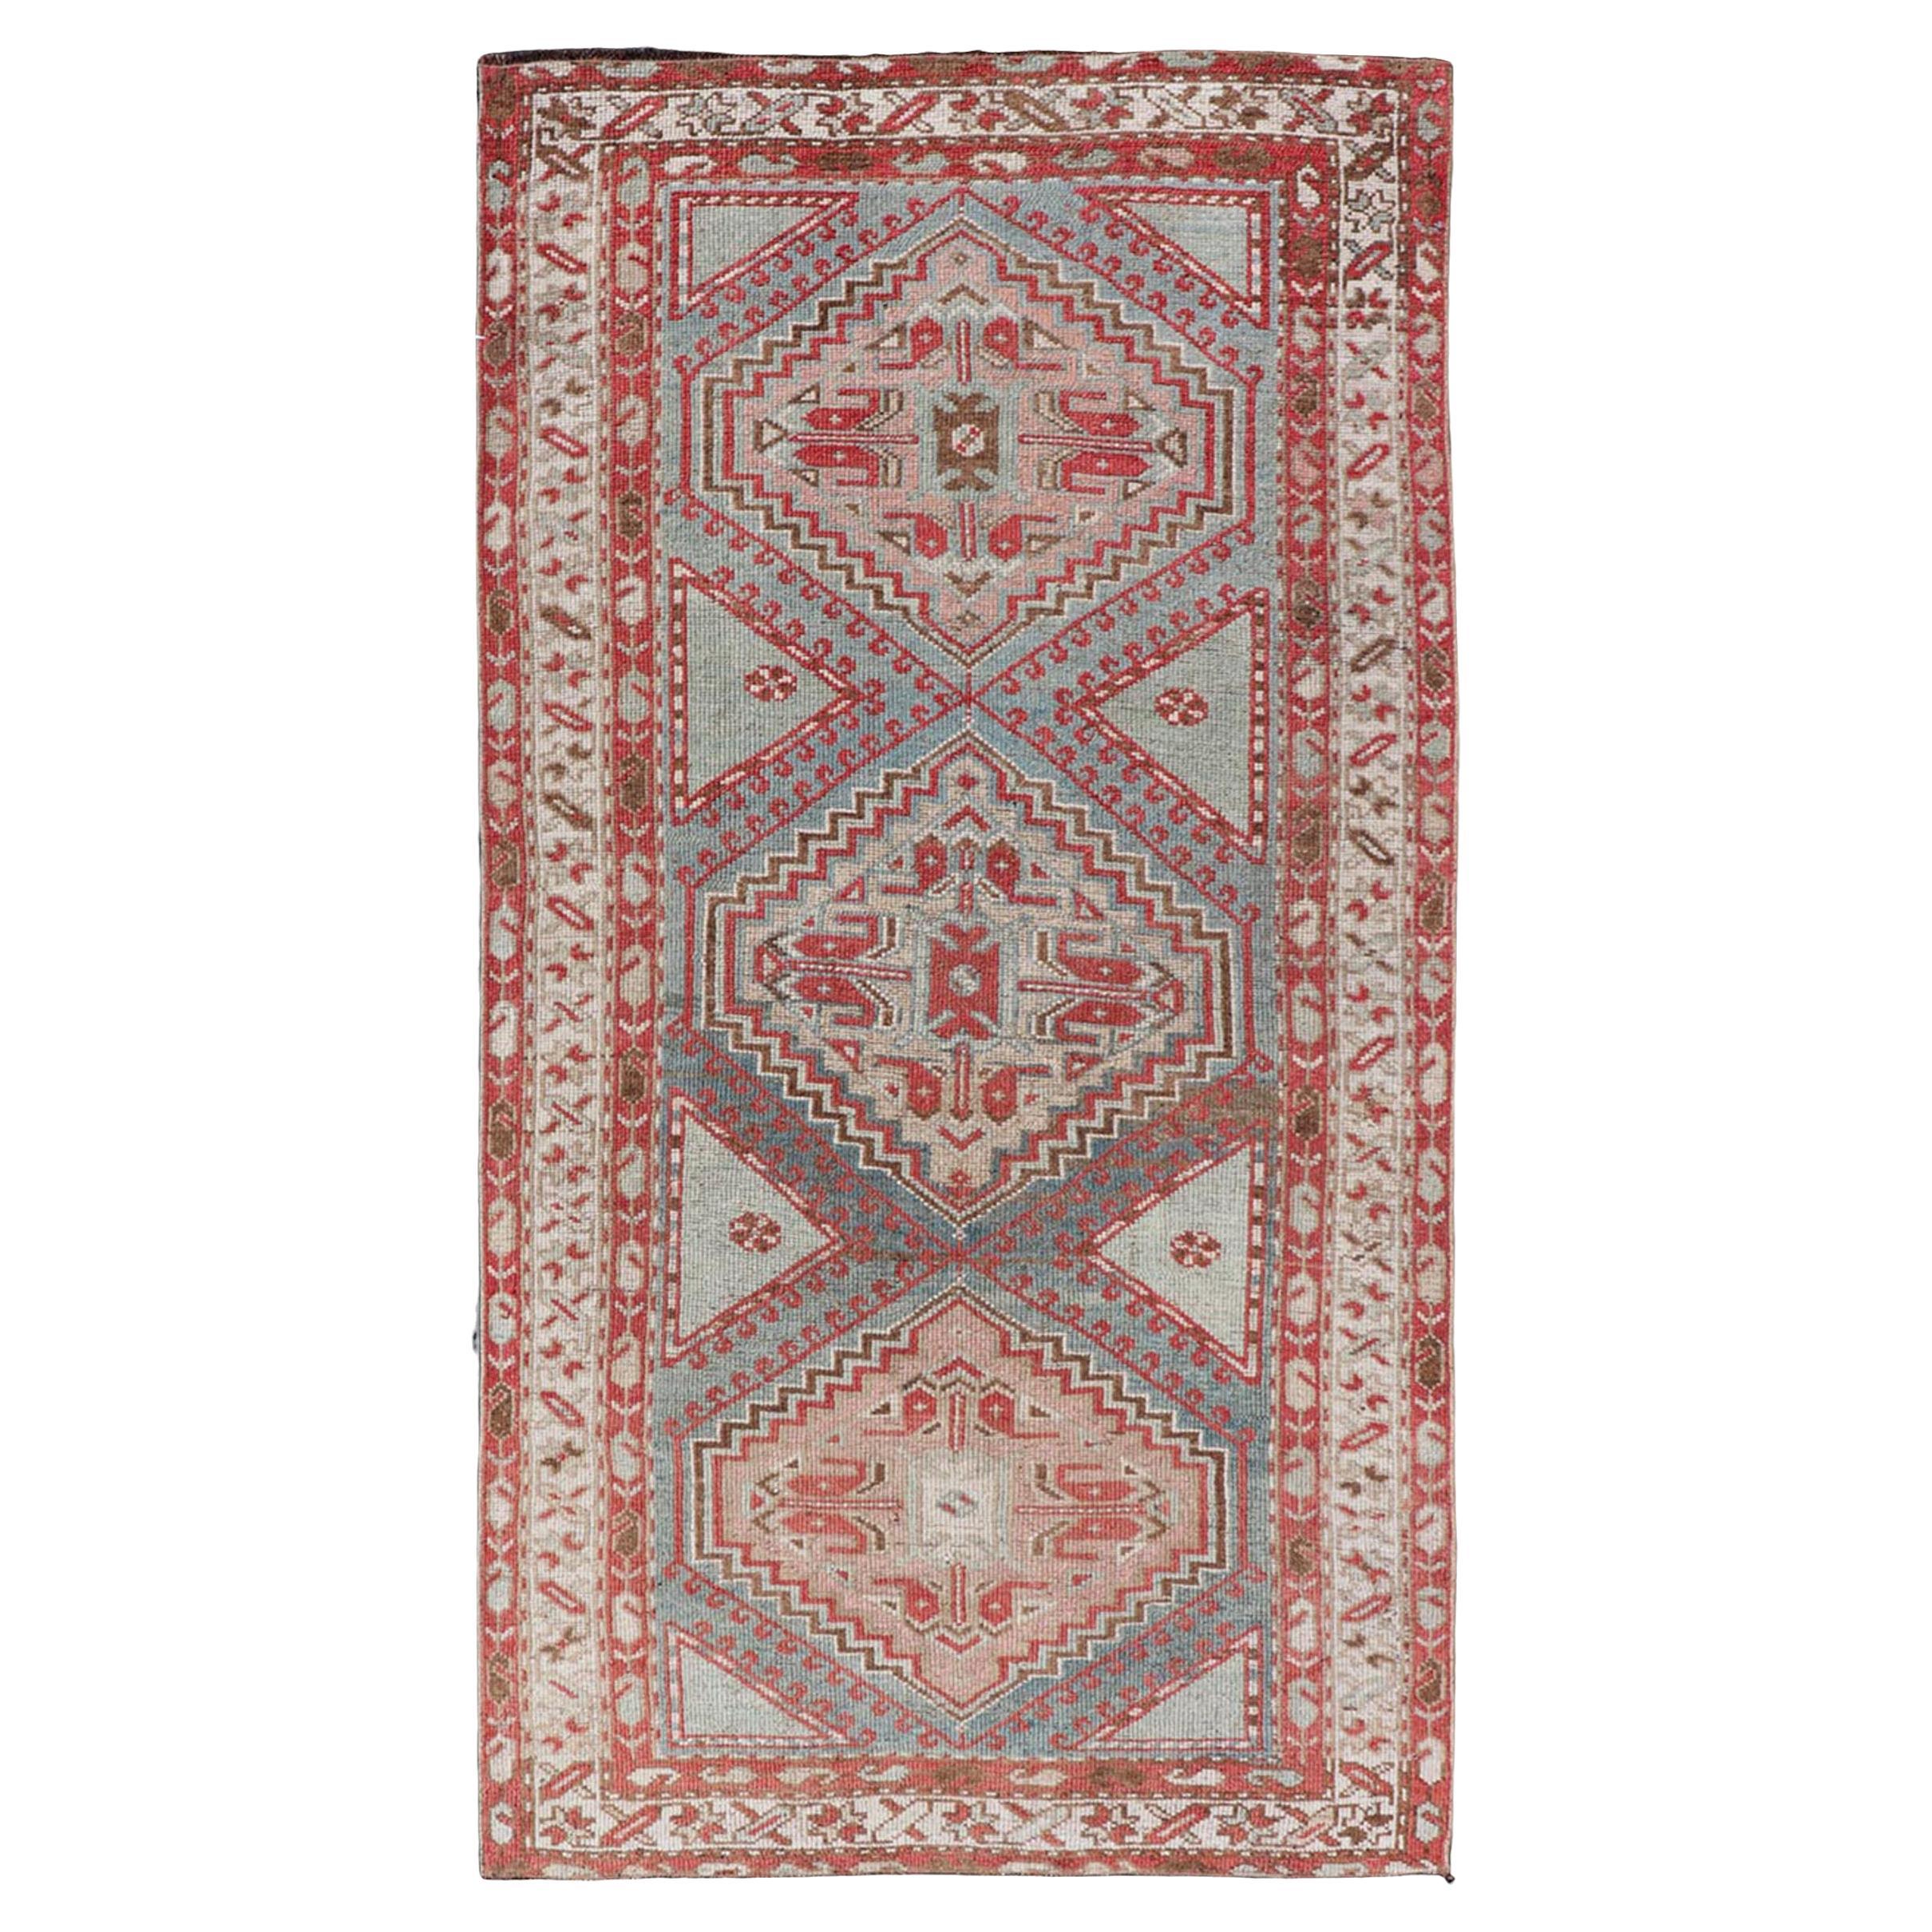 Antiker handgeknüpfter persischer Kurdischer Teppich aus Wolle mit Medaillon-Design